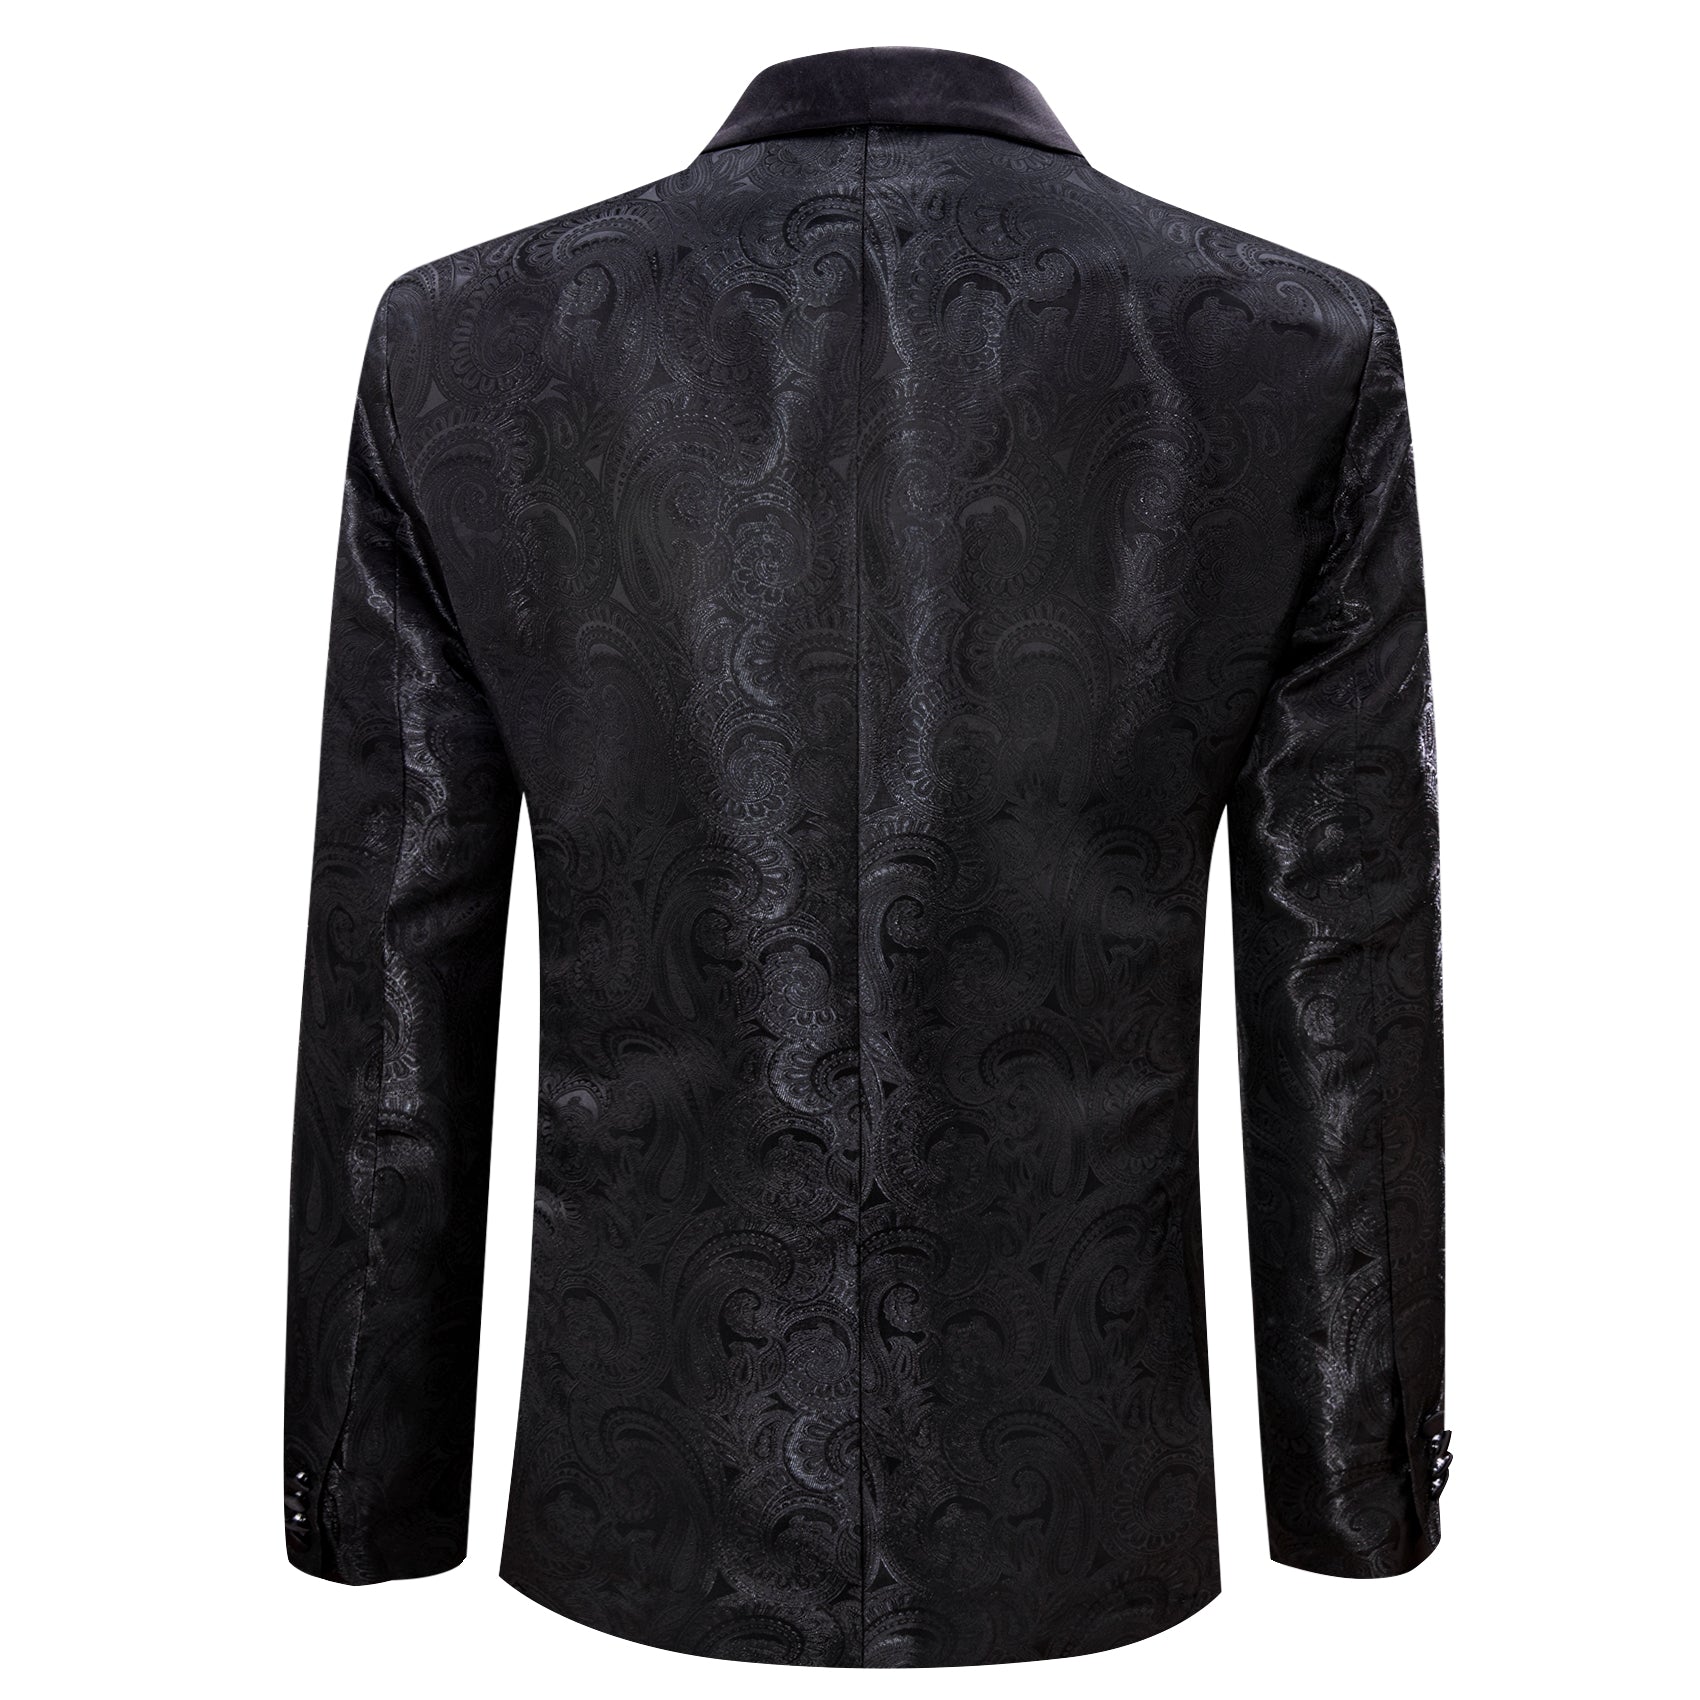 Men's Dress Party Black Floral Suit Jacket Slim One Button Stylish Bla